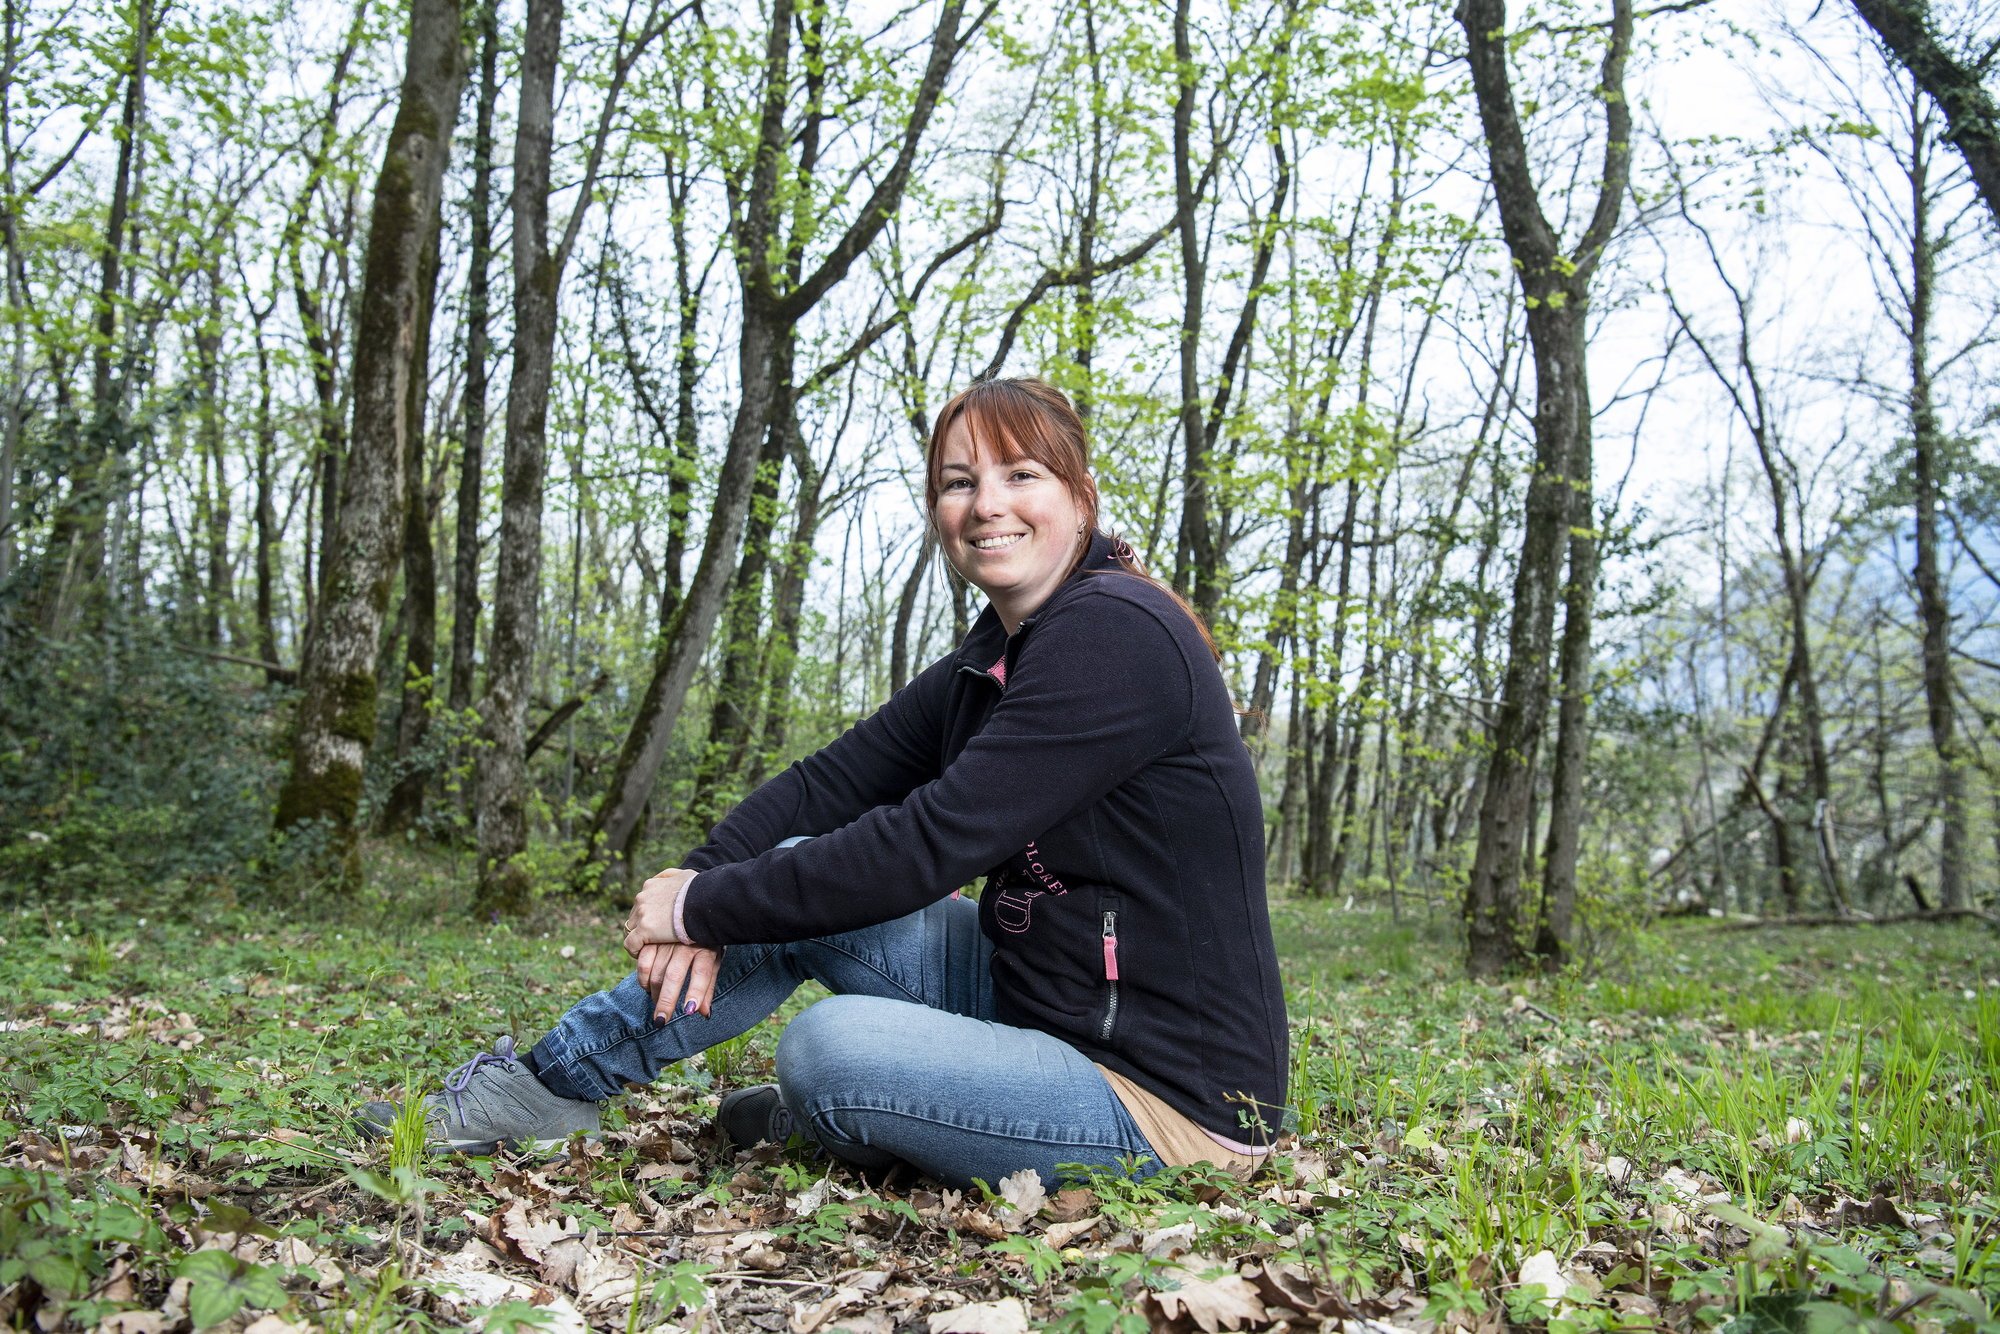 Native de Collombey mais résidant à Saint-Triphon, Sylvie Rossier a choisi d'installer sa crèche dans la forêt bordant son village d'adoption.